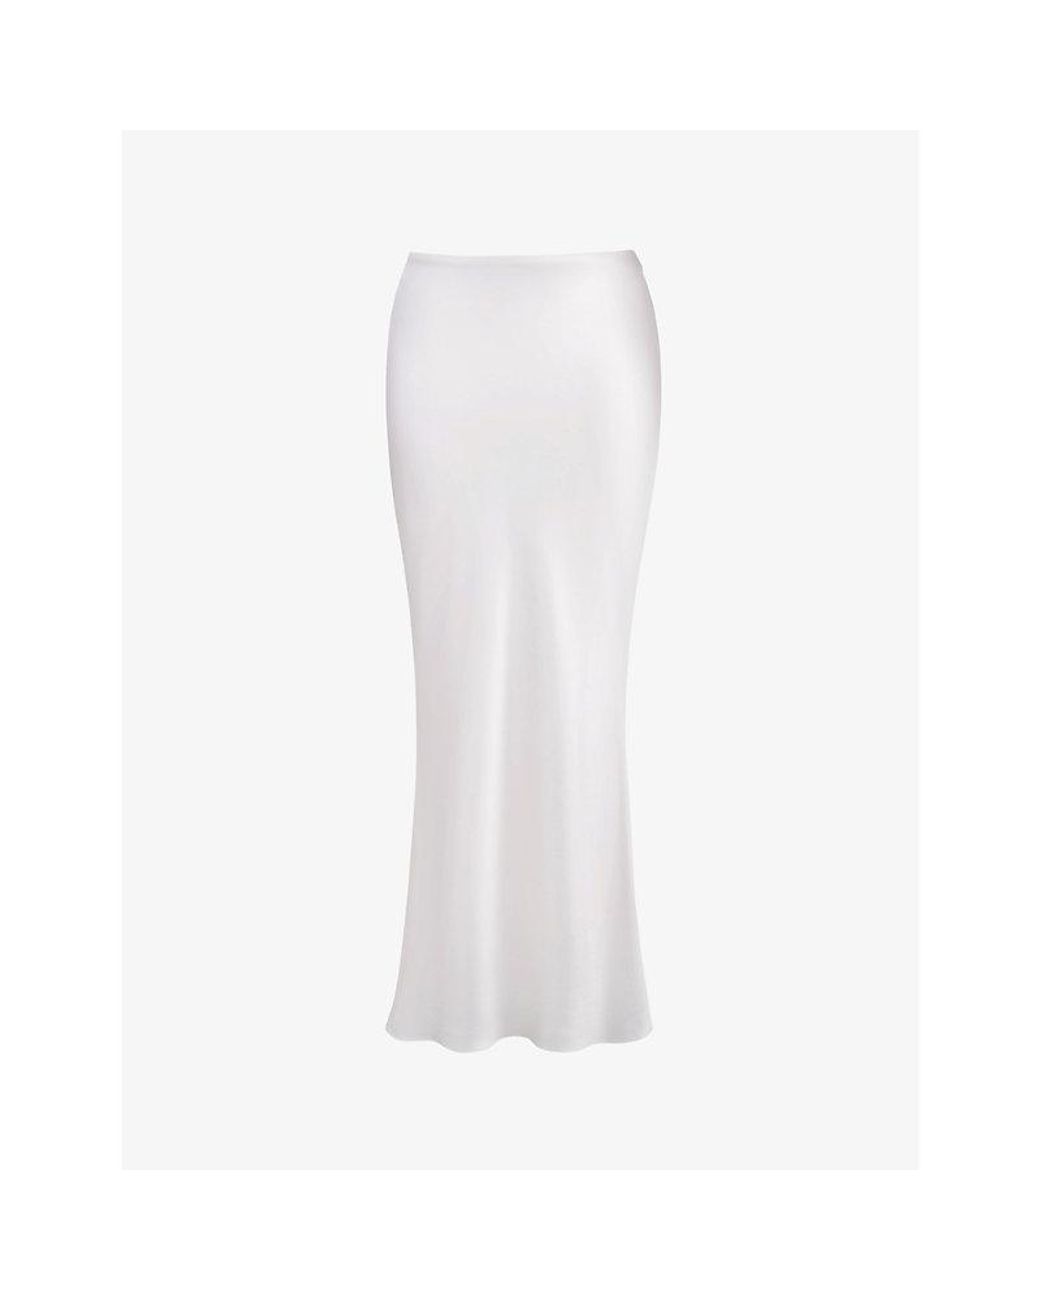 White maxi skirts on Pinterest